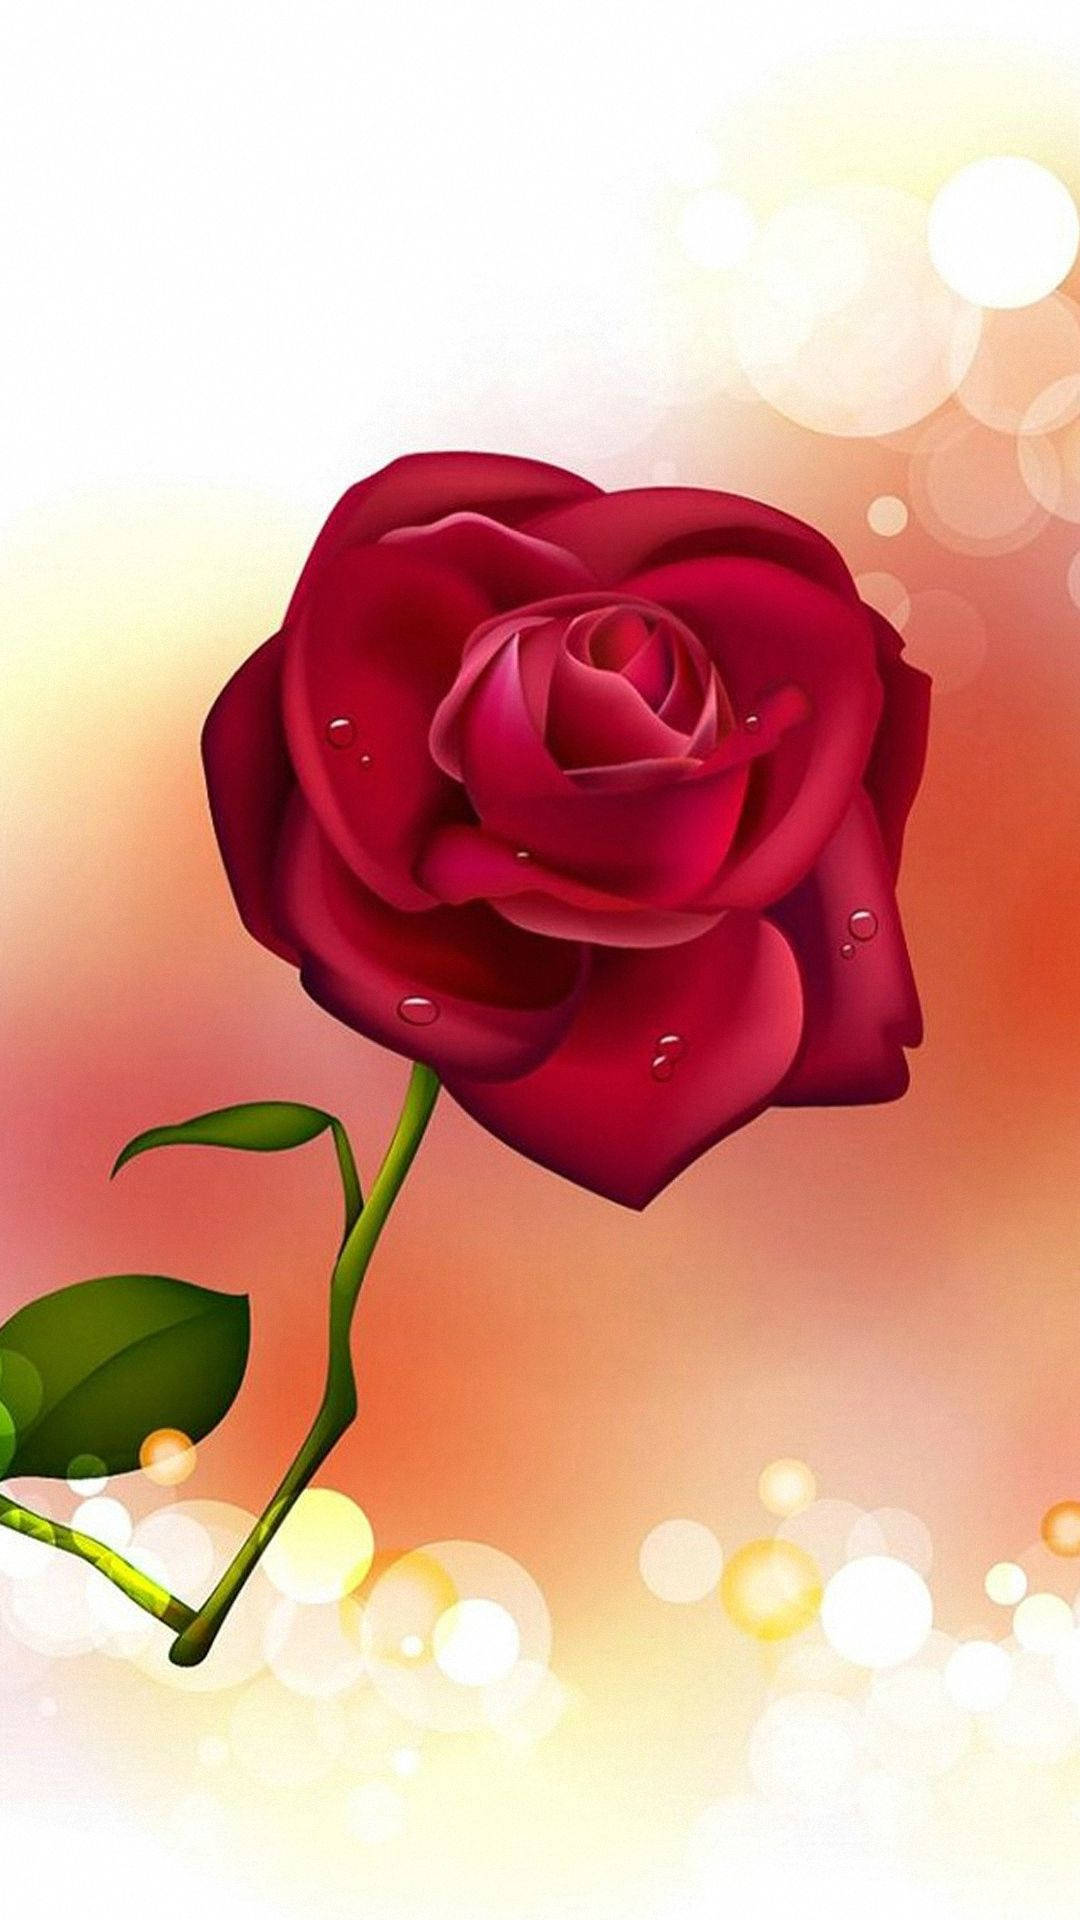 Immagineun Mazzo Di Rose Rosse E Rosa In Un Vasetto Di Vetro Sfondo